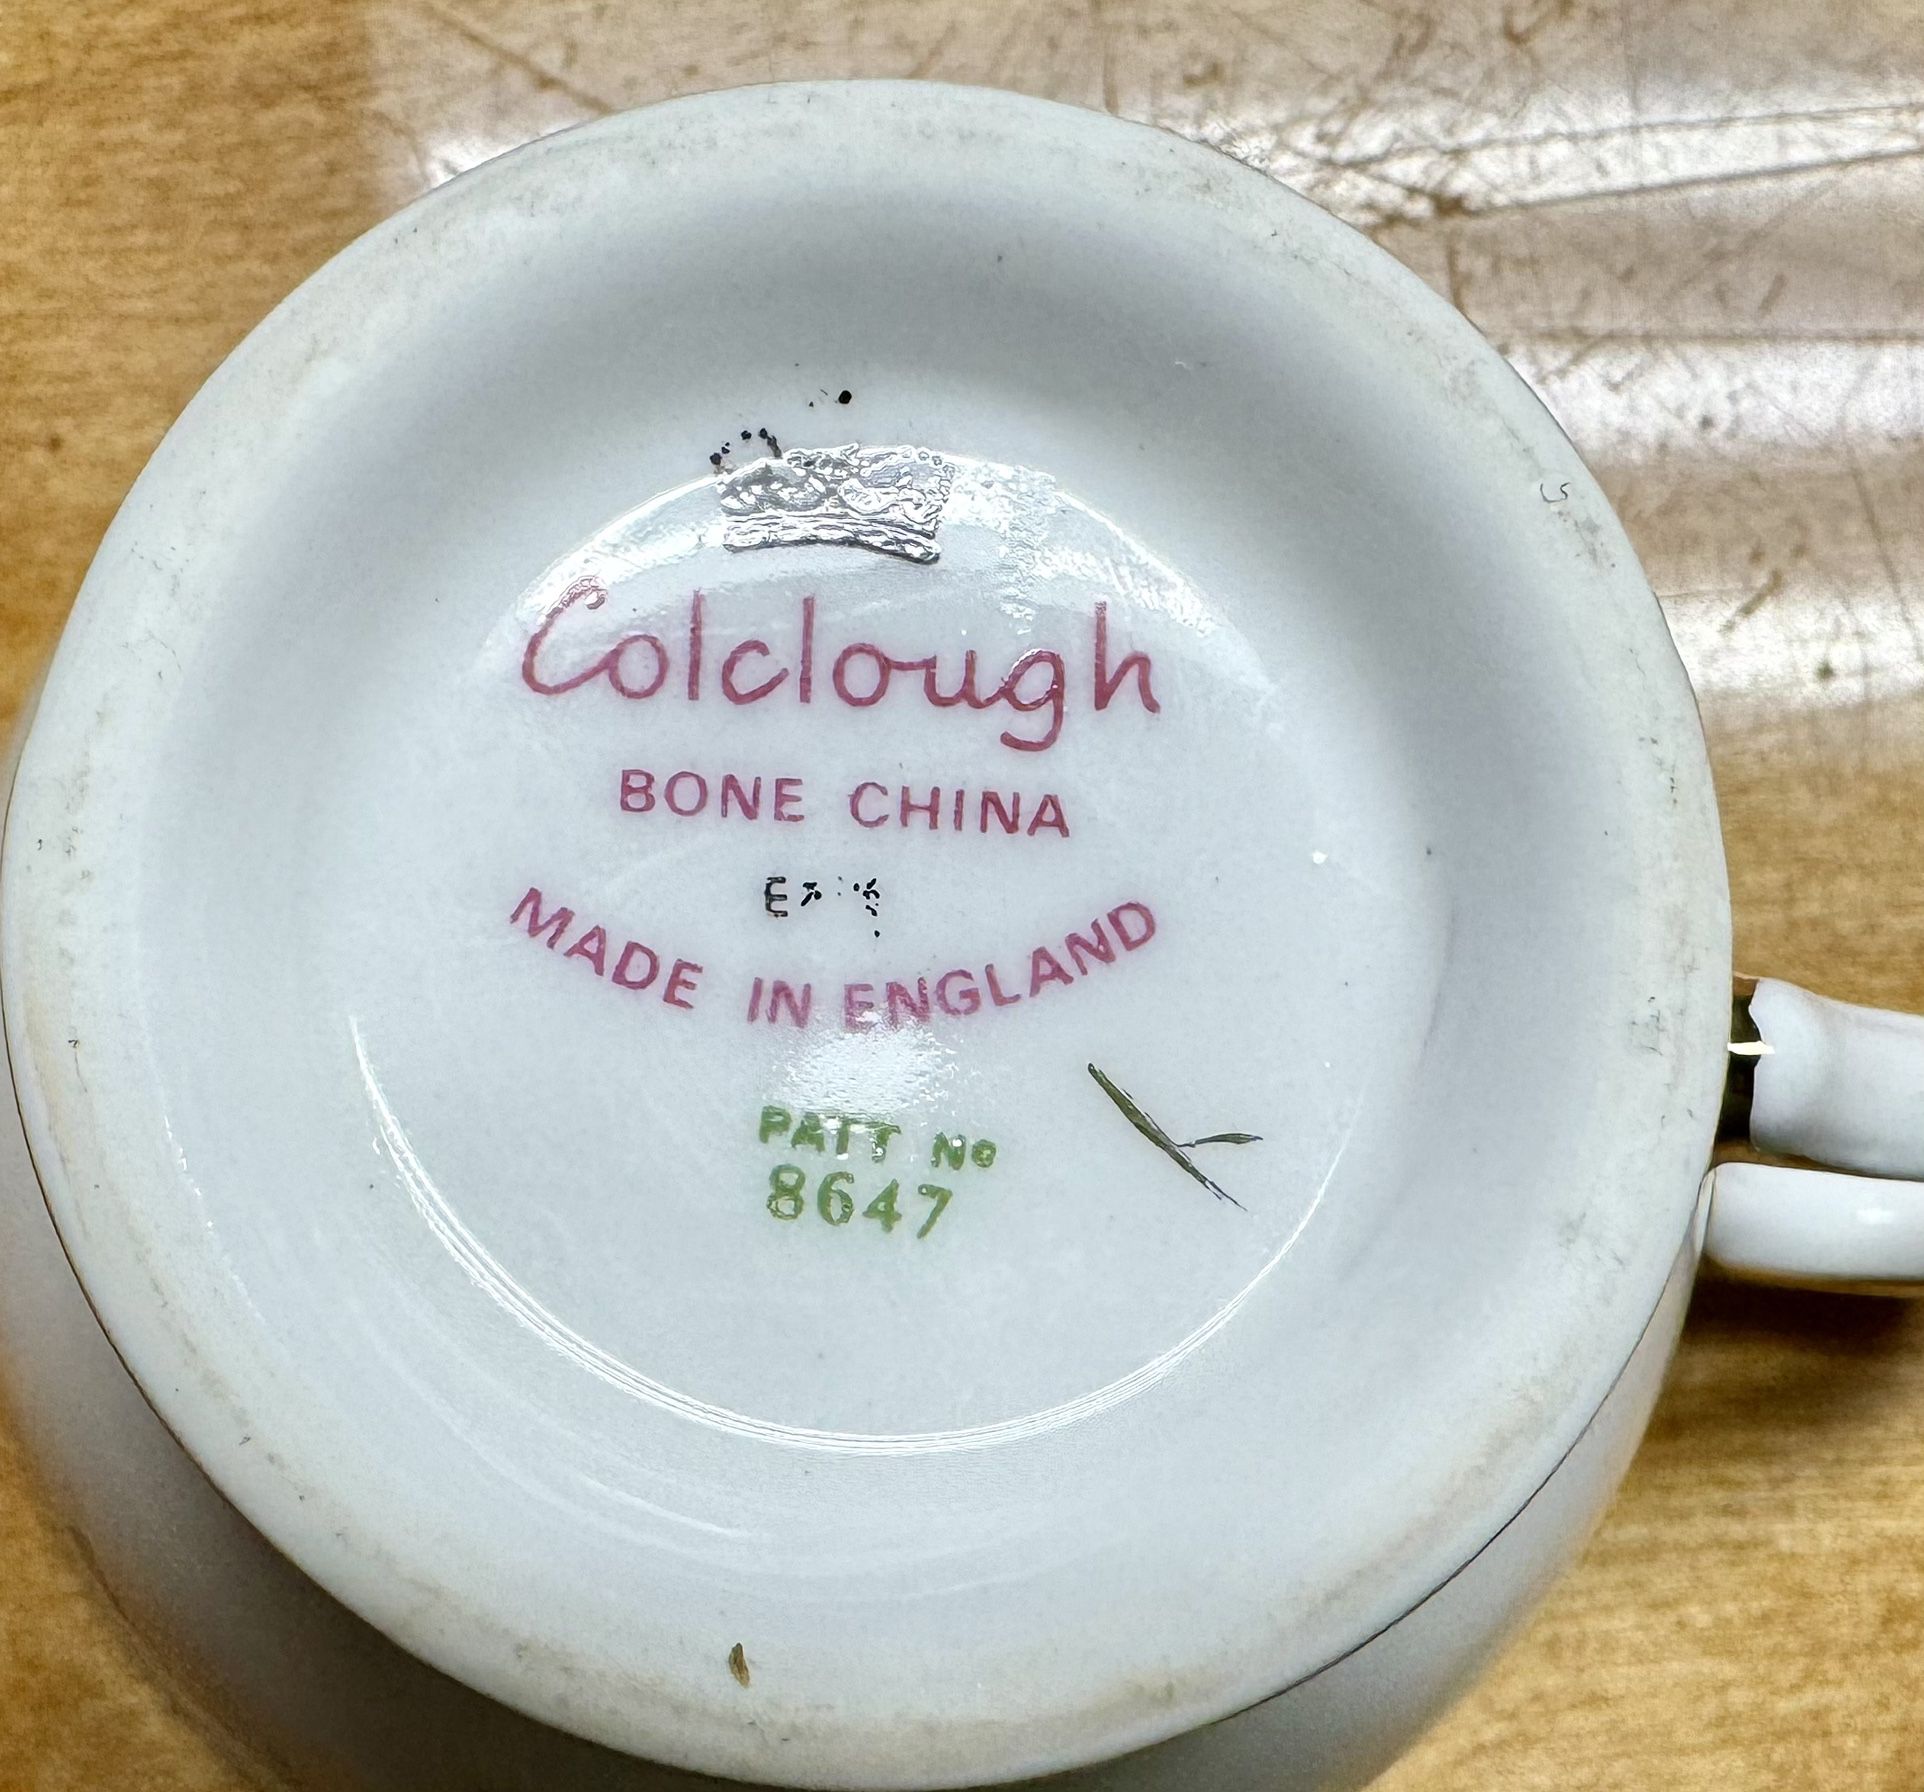 Colclough bone china tea set